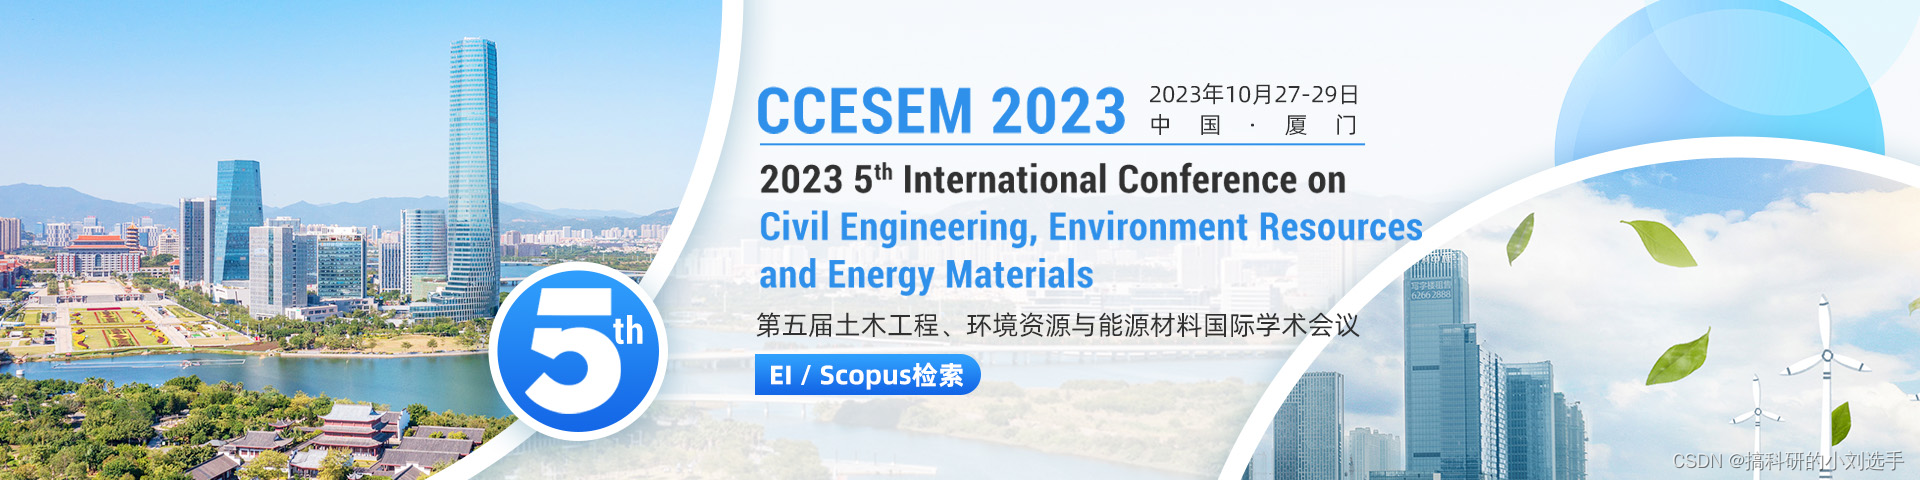 【会议征稿】第五届土木工程、环境资源与能源材料国际学术会议（CCESEM 2023）